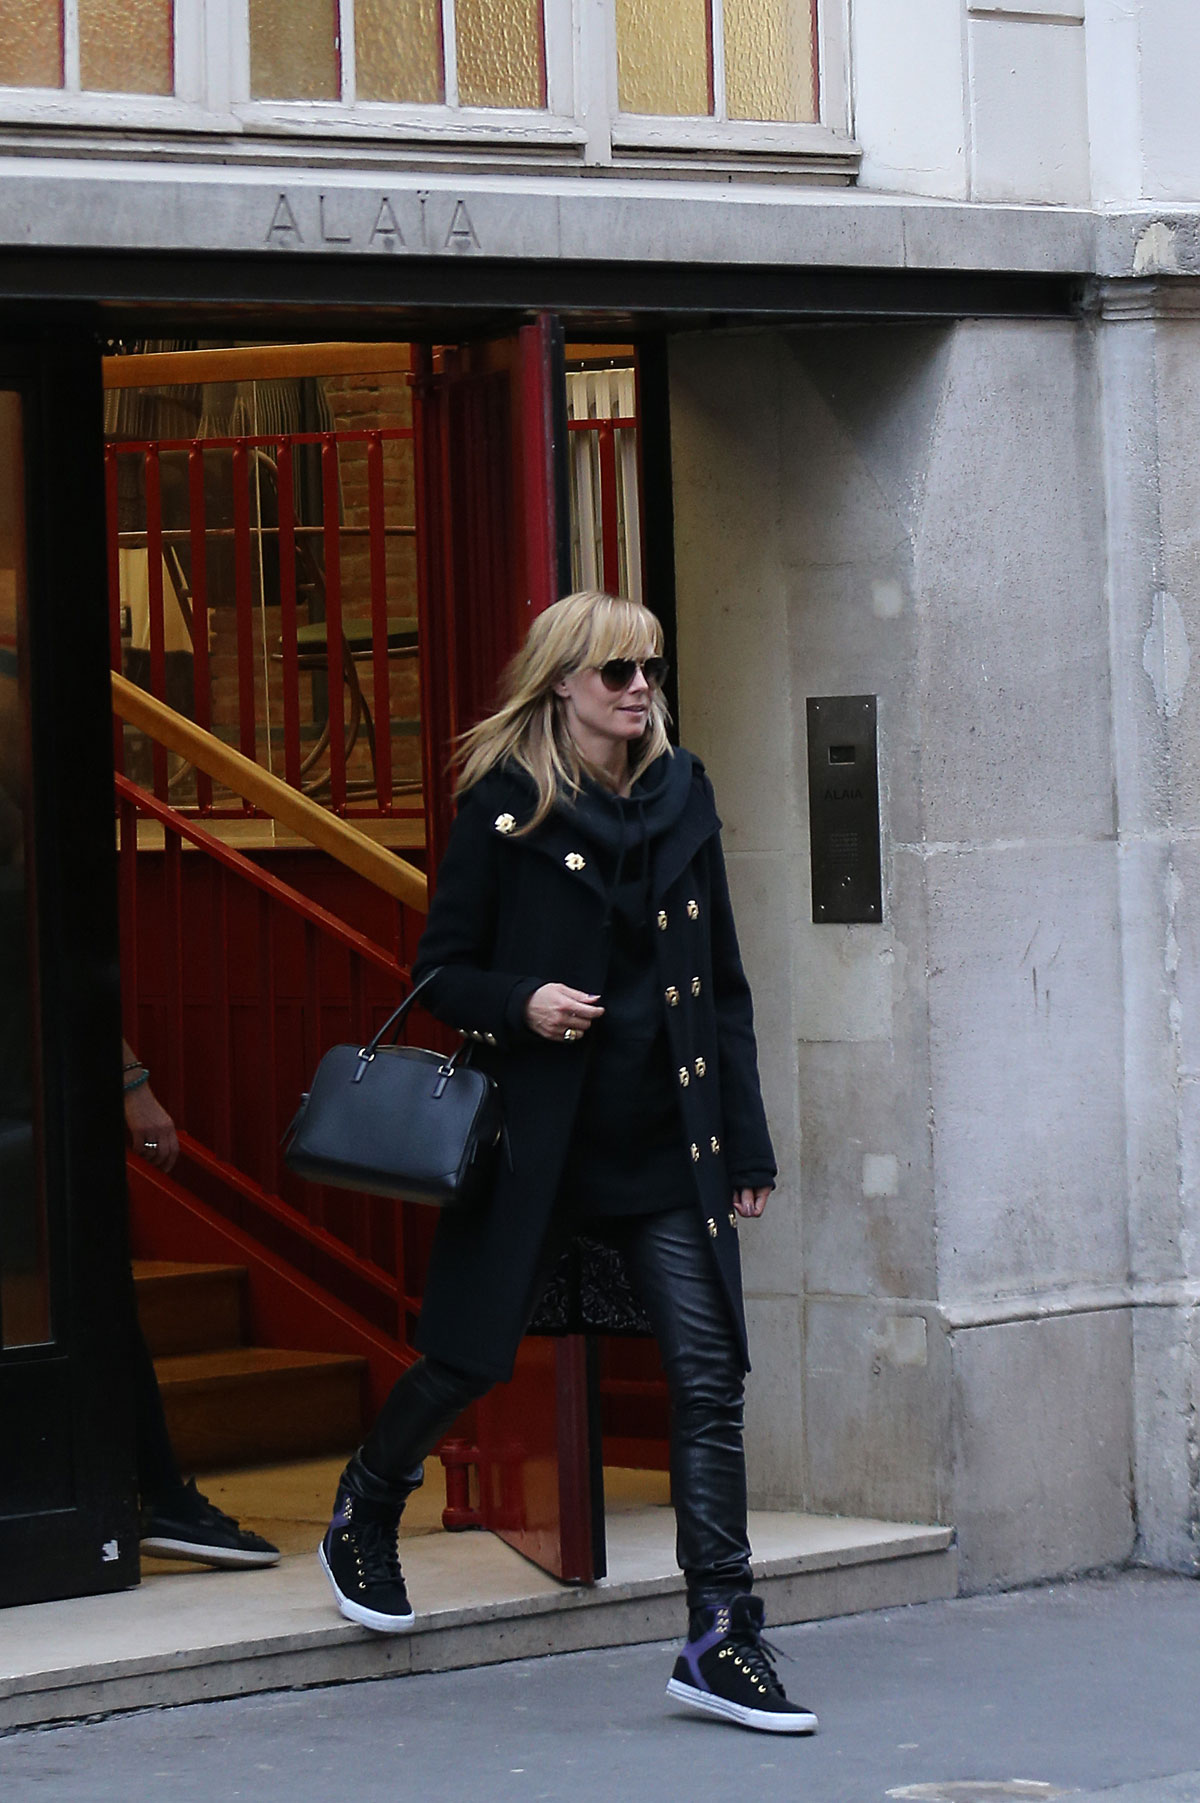 Heidi Klum visiting Paris